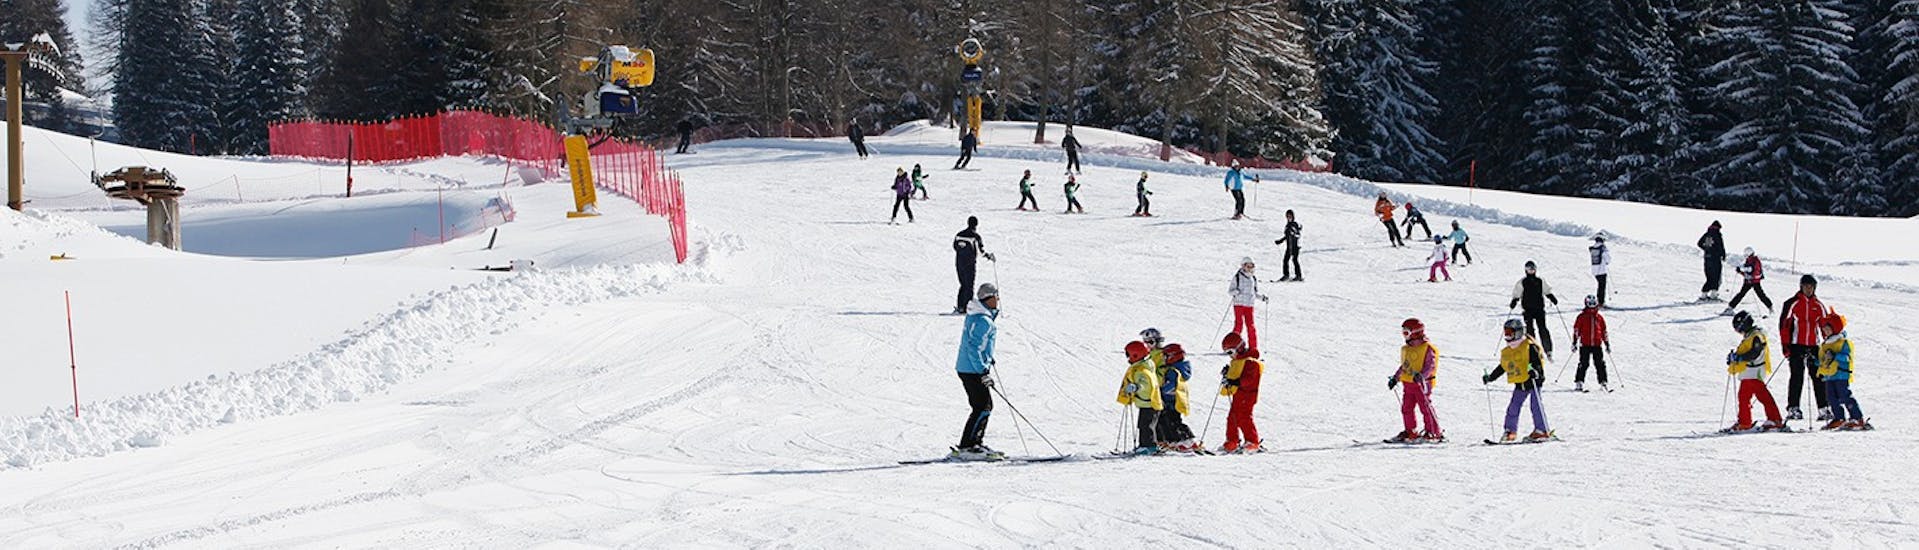 Pista innevata dove si tengono le Lezioni intensive di sci per bambini con esperienza (6-14 anni) con Scuola Italiana Sci Folgaria-Fondo Grande.